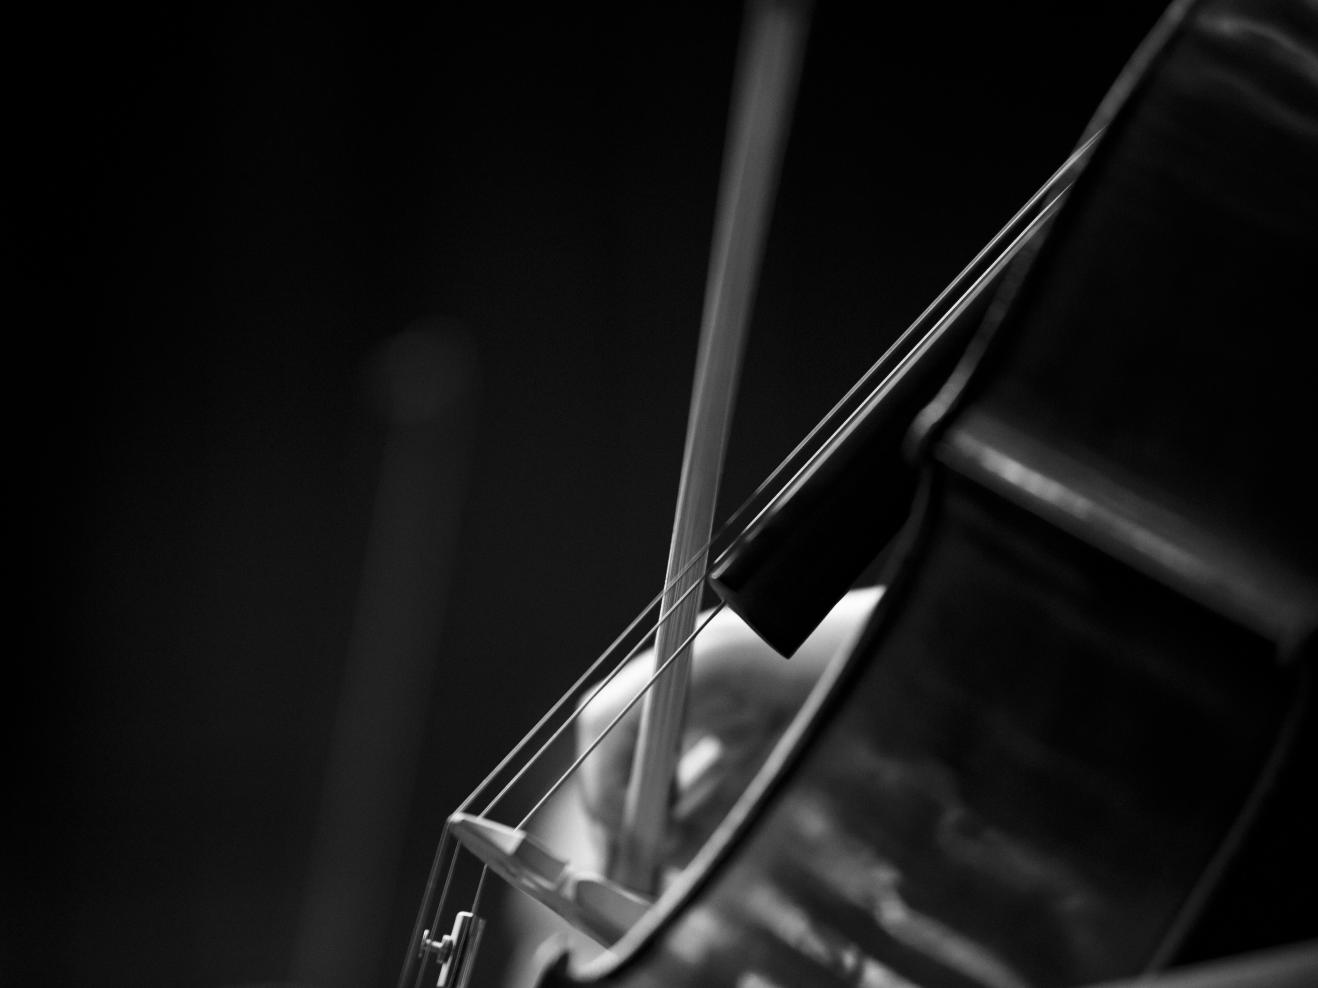 Detailansicht eines Cellos in schwarz-weiß.